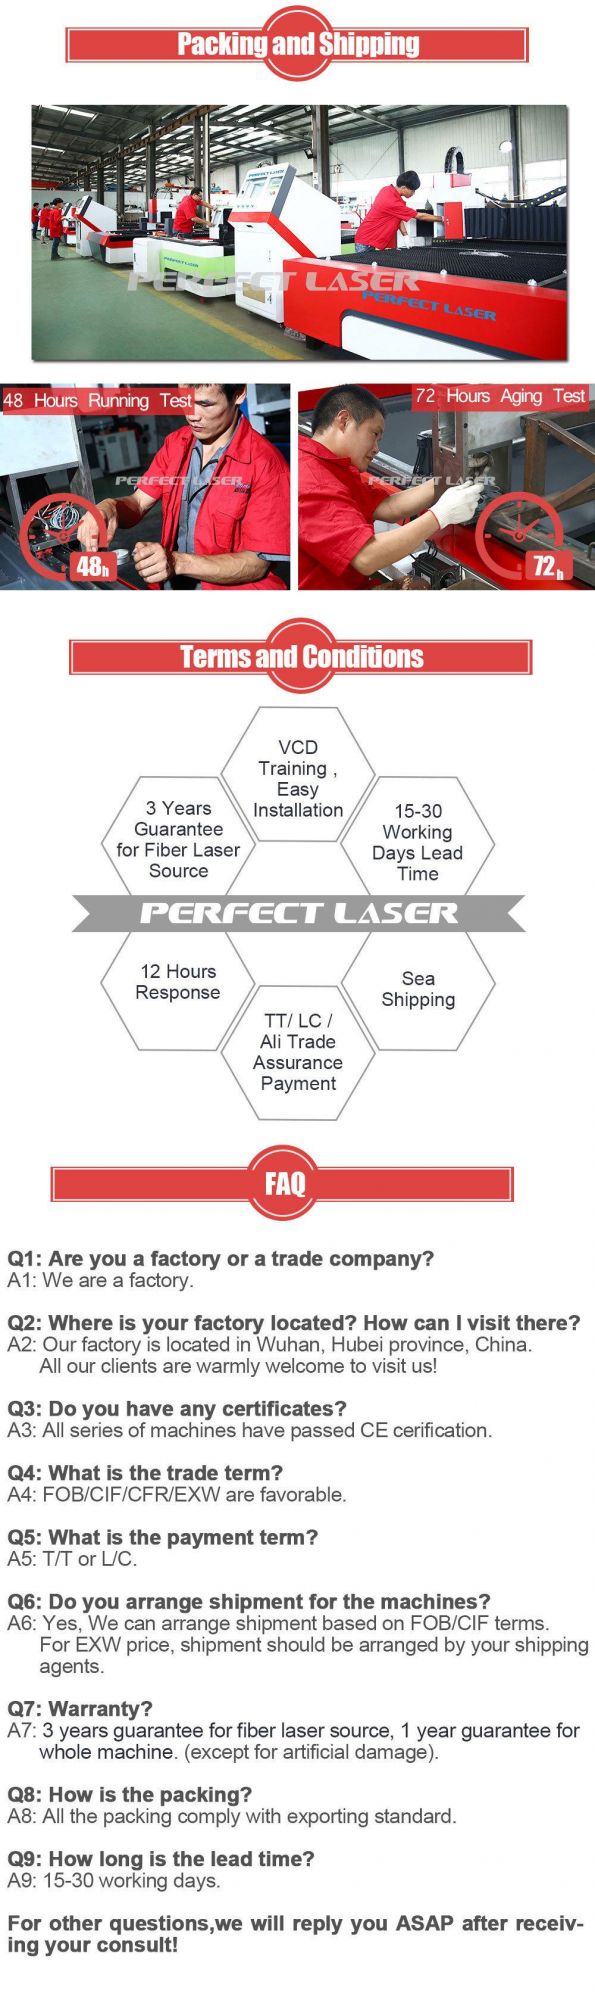 1000W Stainless Steel Fiber Laser Cutting Machine